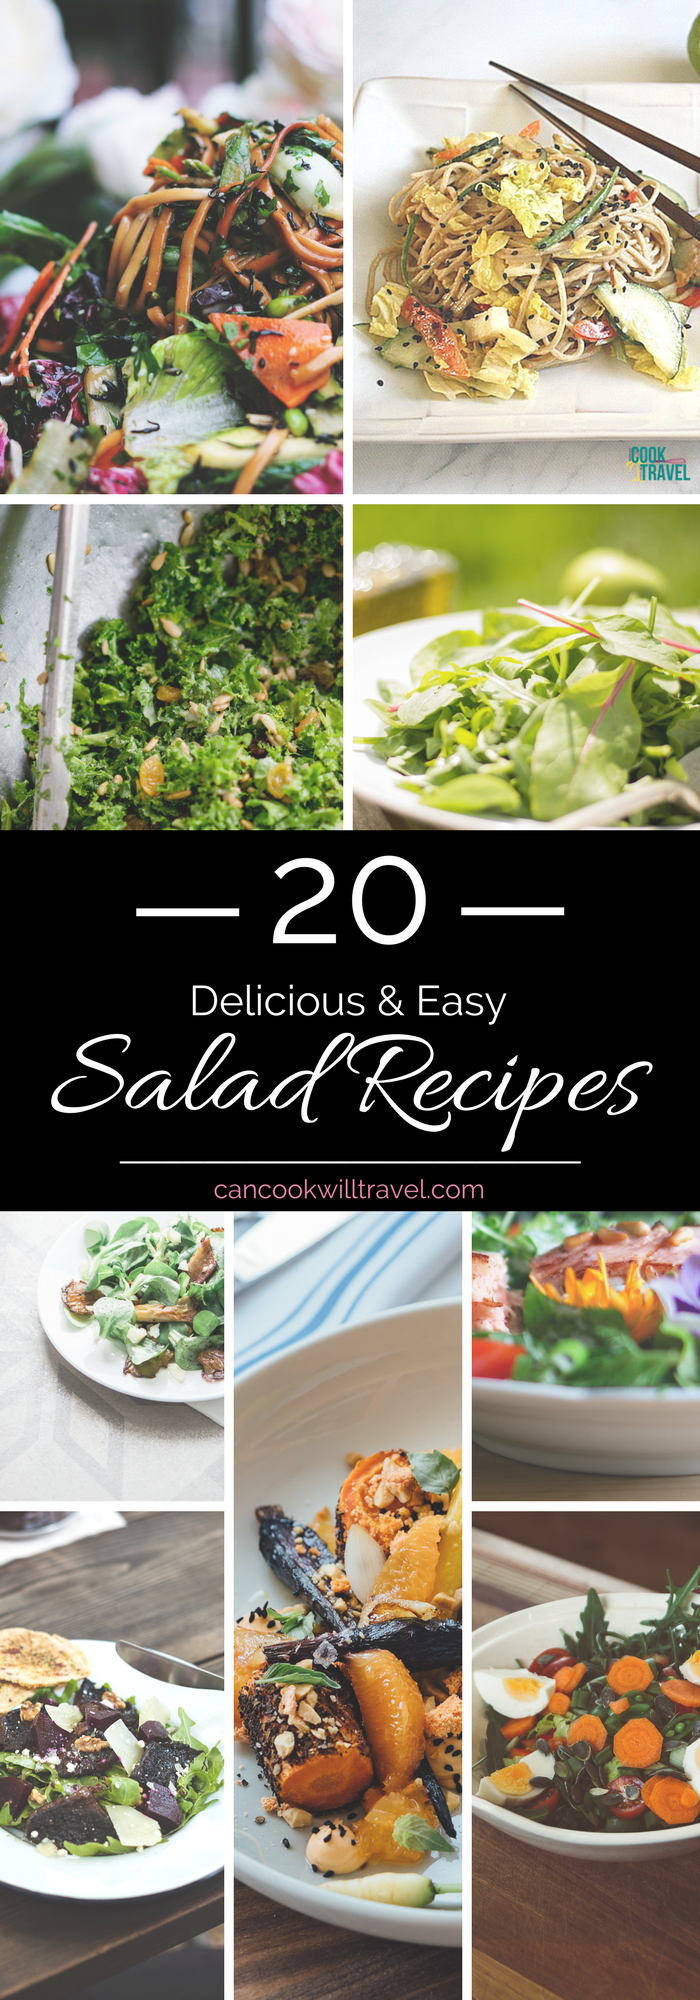 20 Salad Recipes